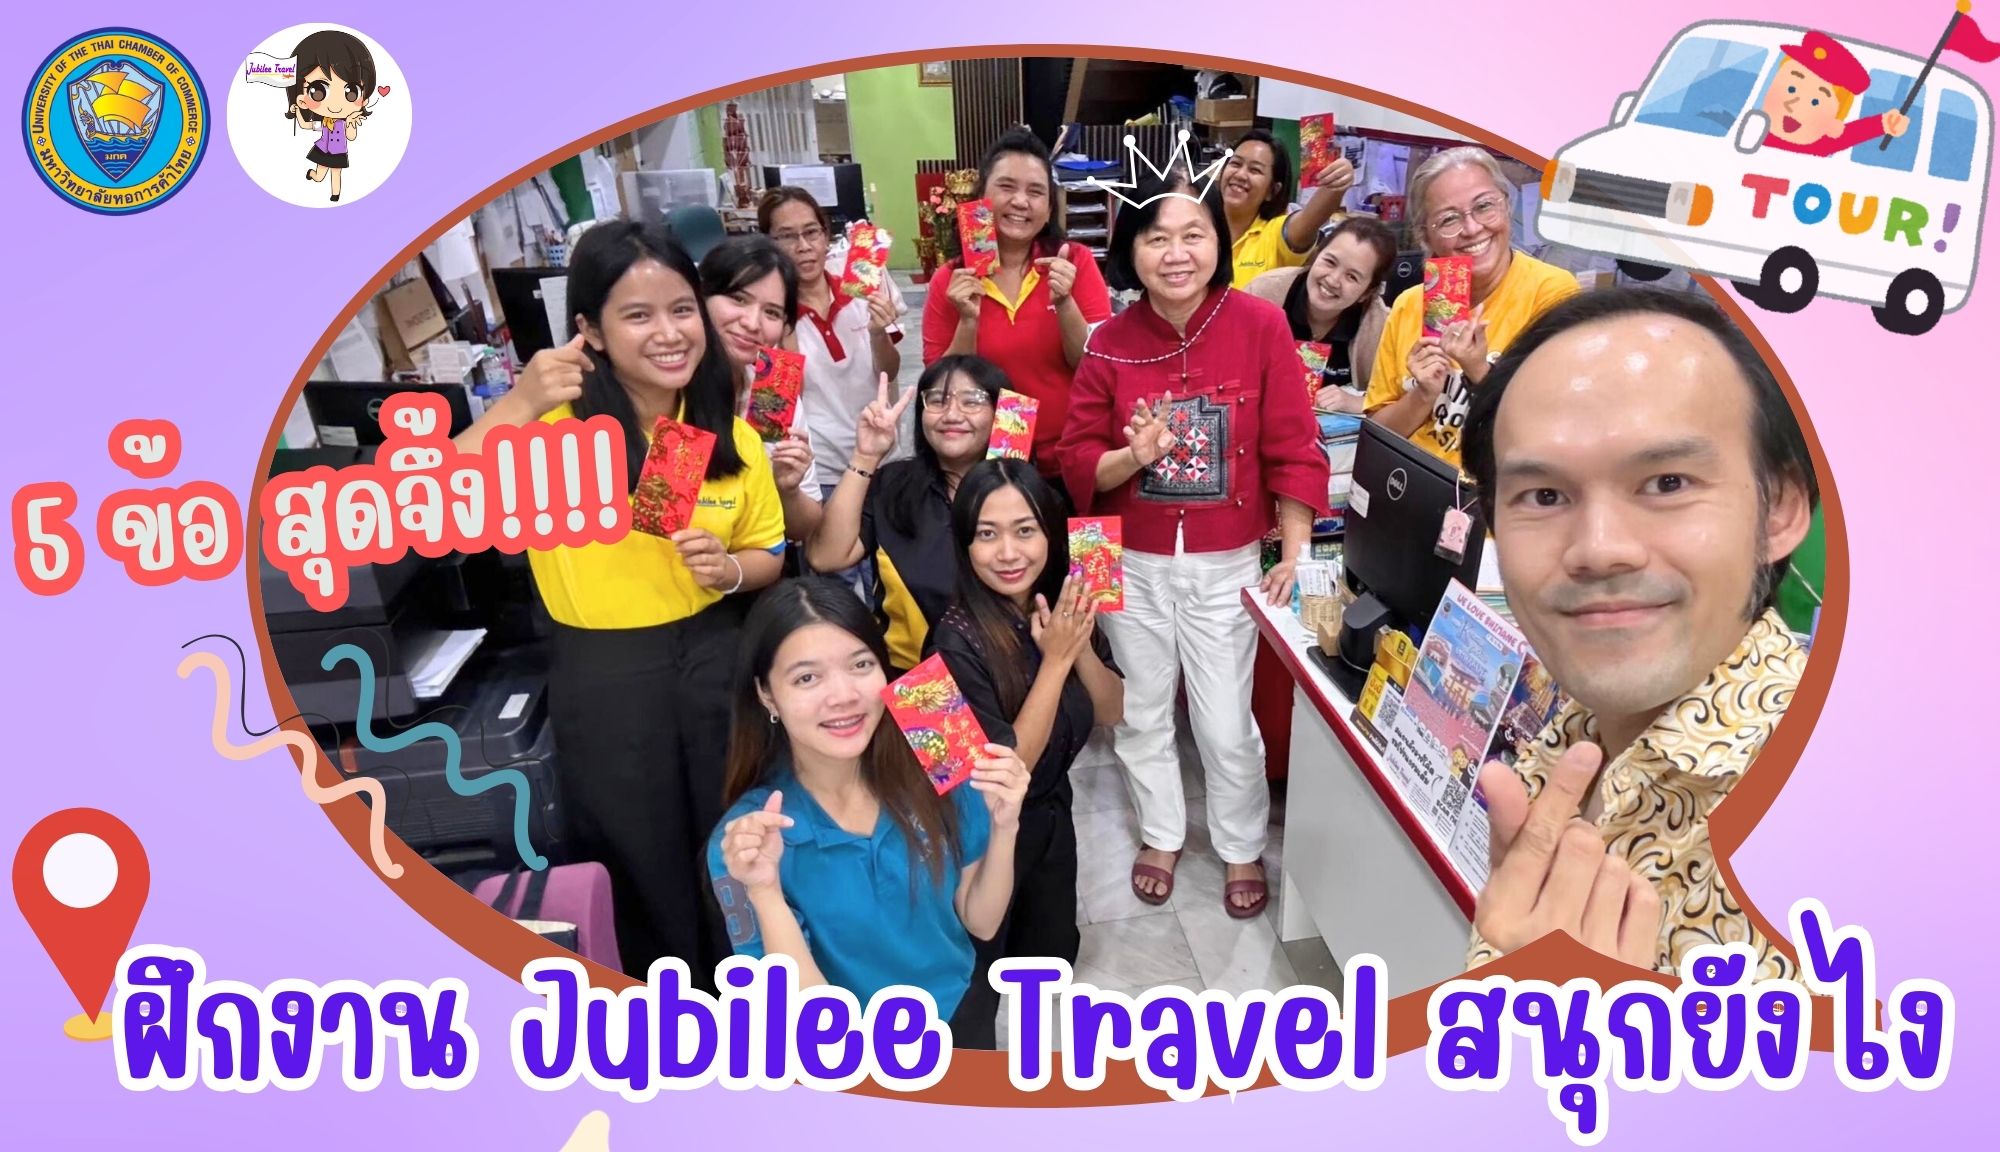 5 ข้อ สุดจึ้ง มาฝึกงานที่ Jubilee Travel สนุกยังไง !!!